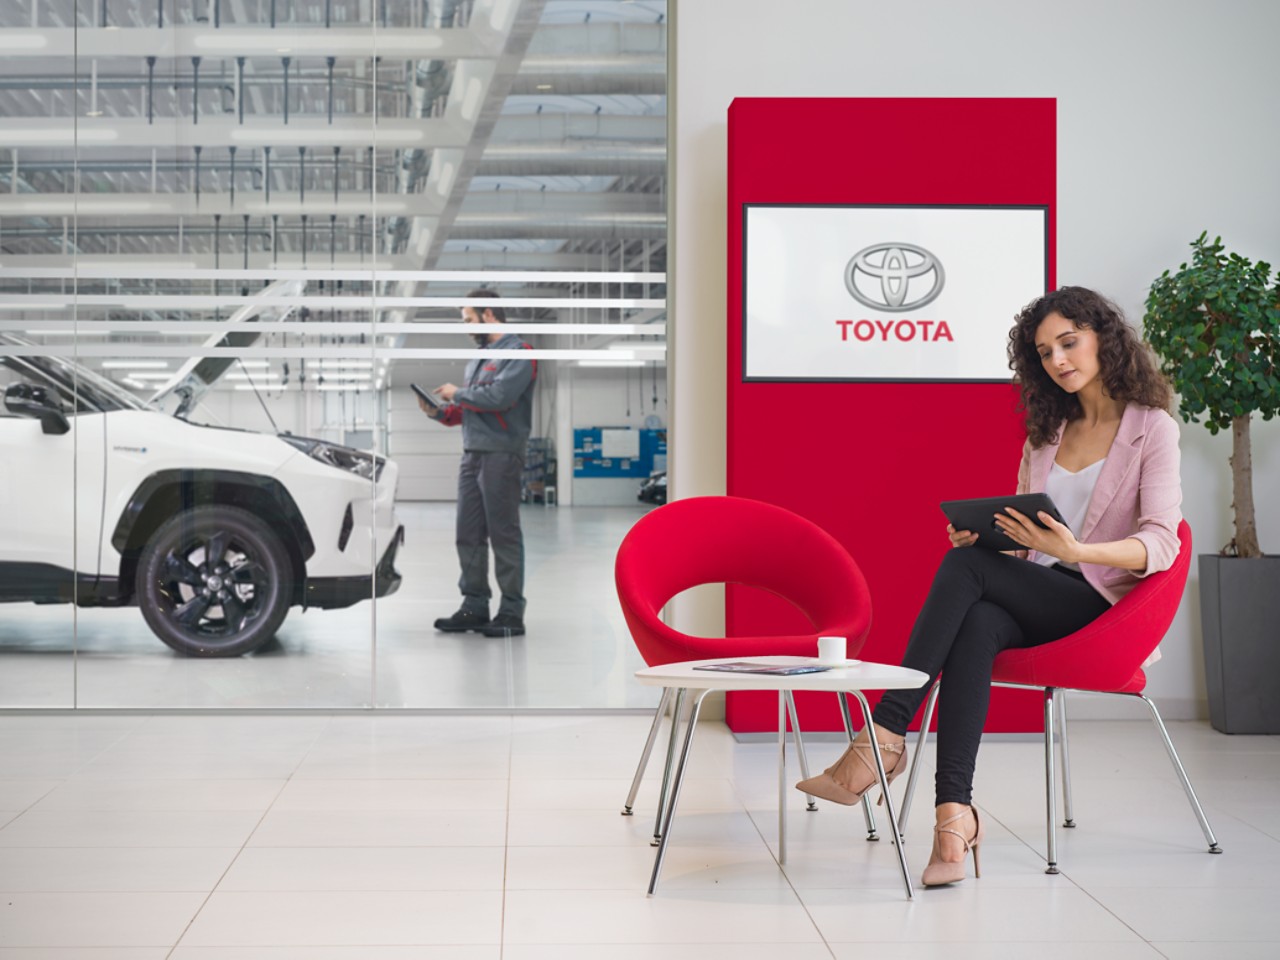 Una donna siede nella sala d’attesa di un’officina Toyota. Sta guardando un tablet, con un logo Toyota visualizzato su uno schermo tv davanti a lei.